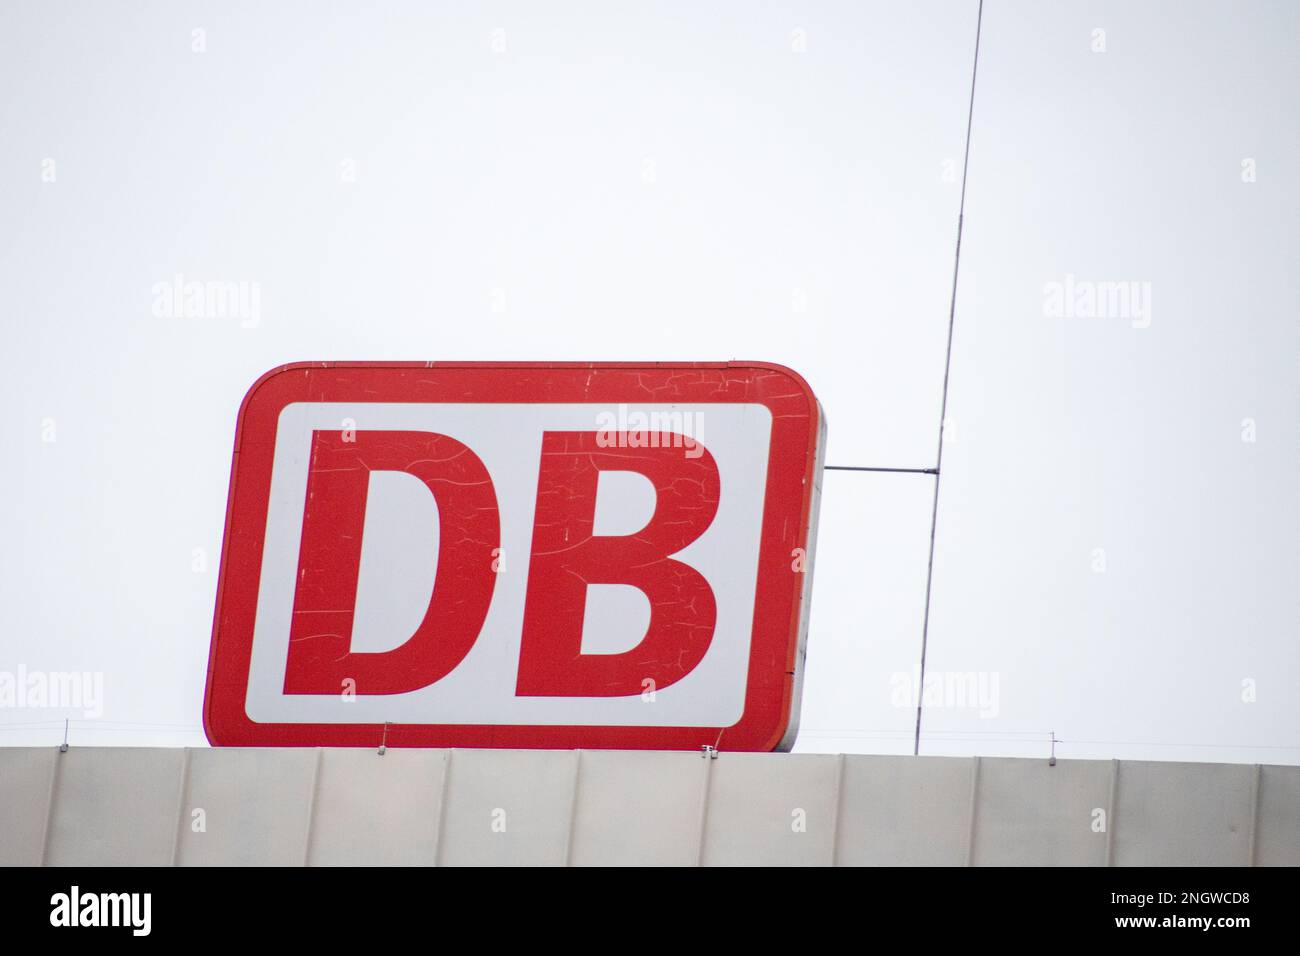 Essen, Germany: Deutsche Bahn sign. Credit: Sinai Noor/Alamy Stock Photo